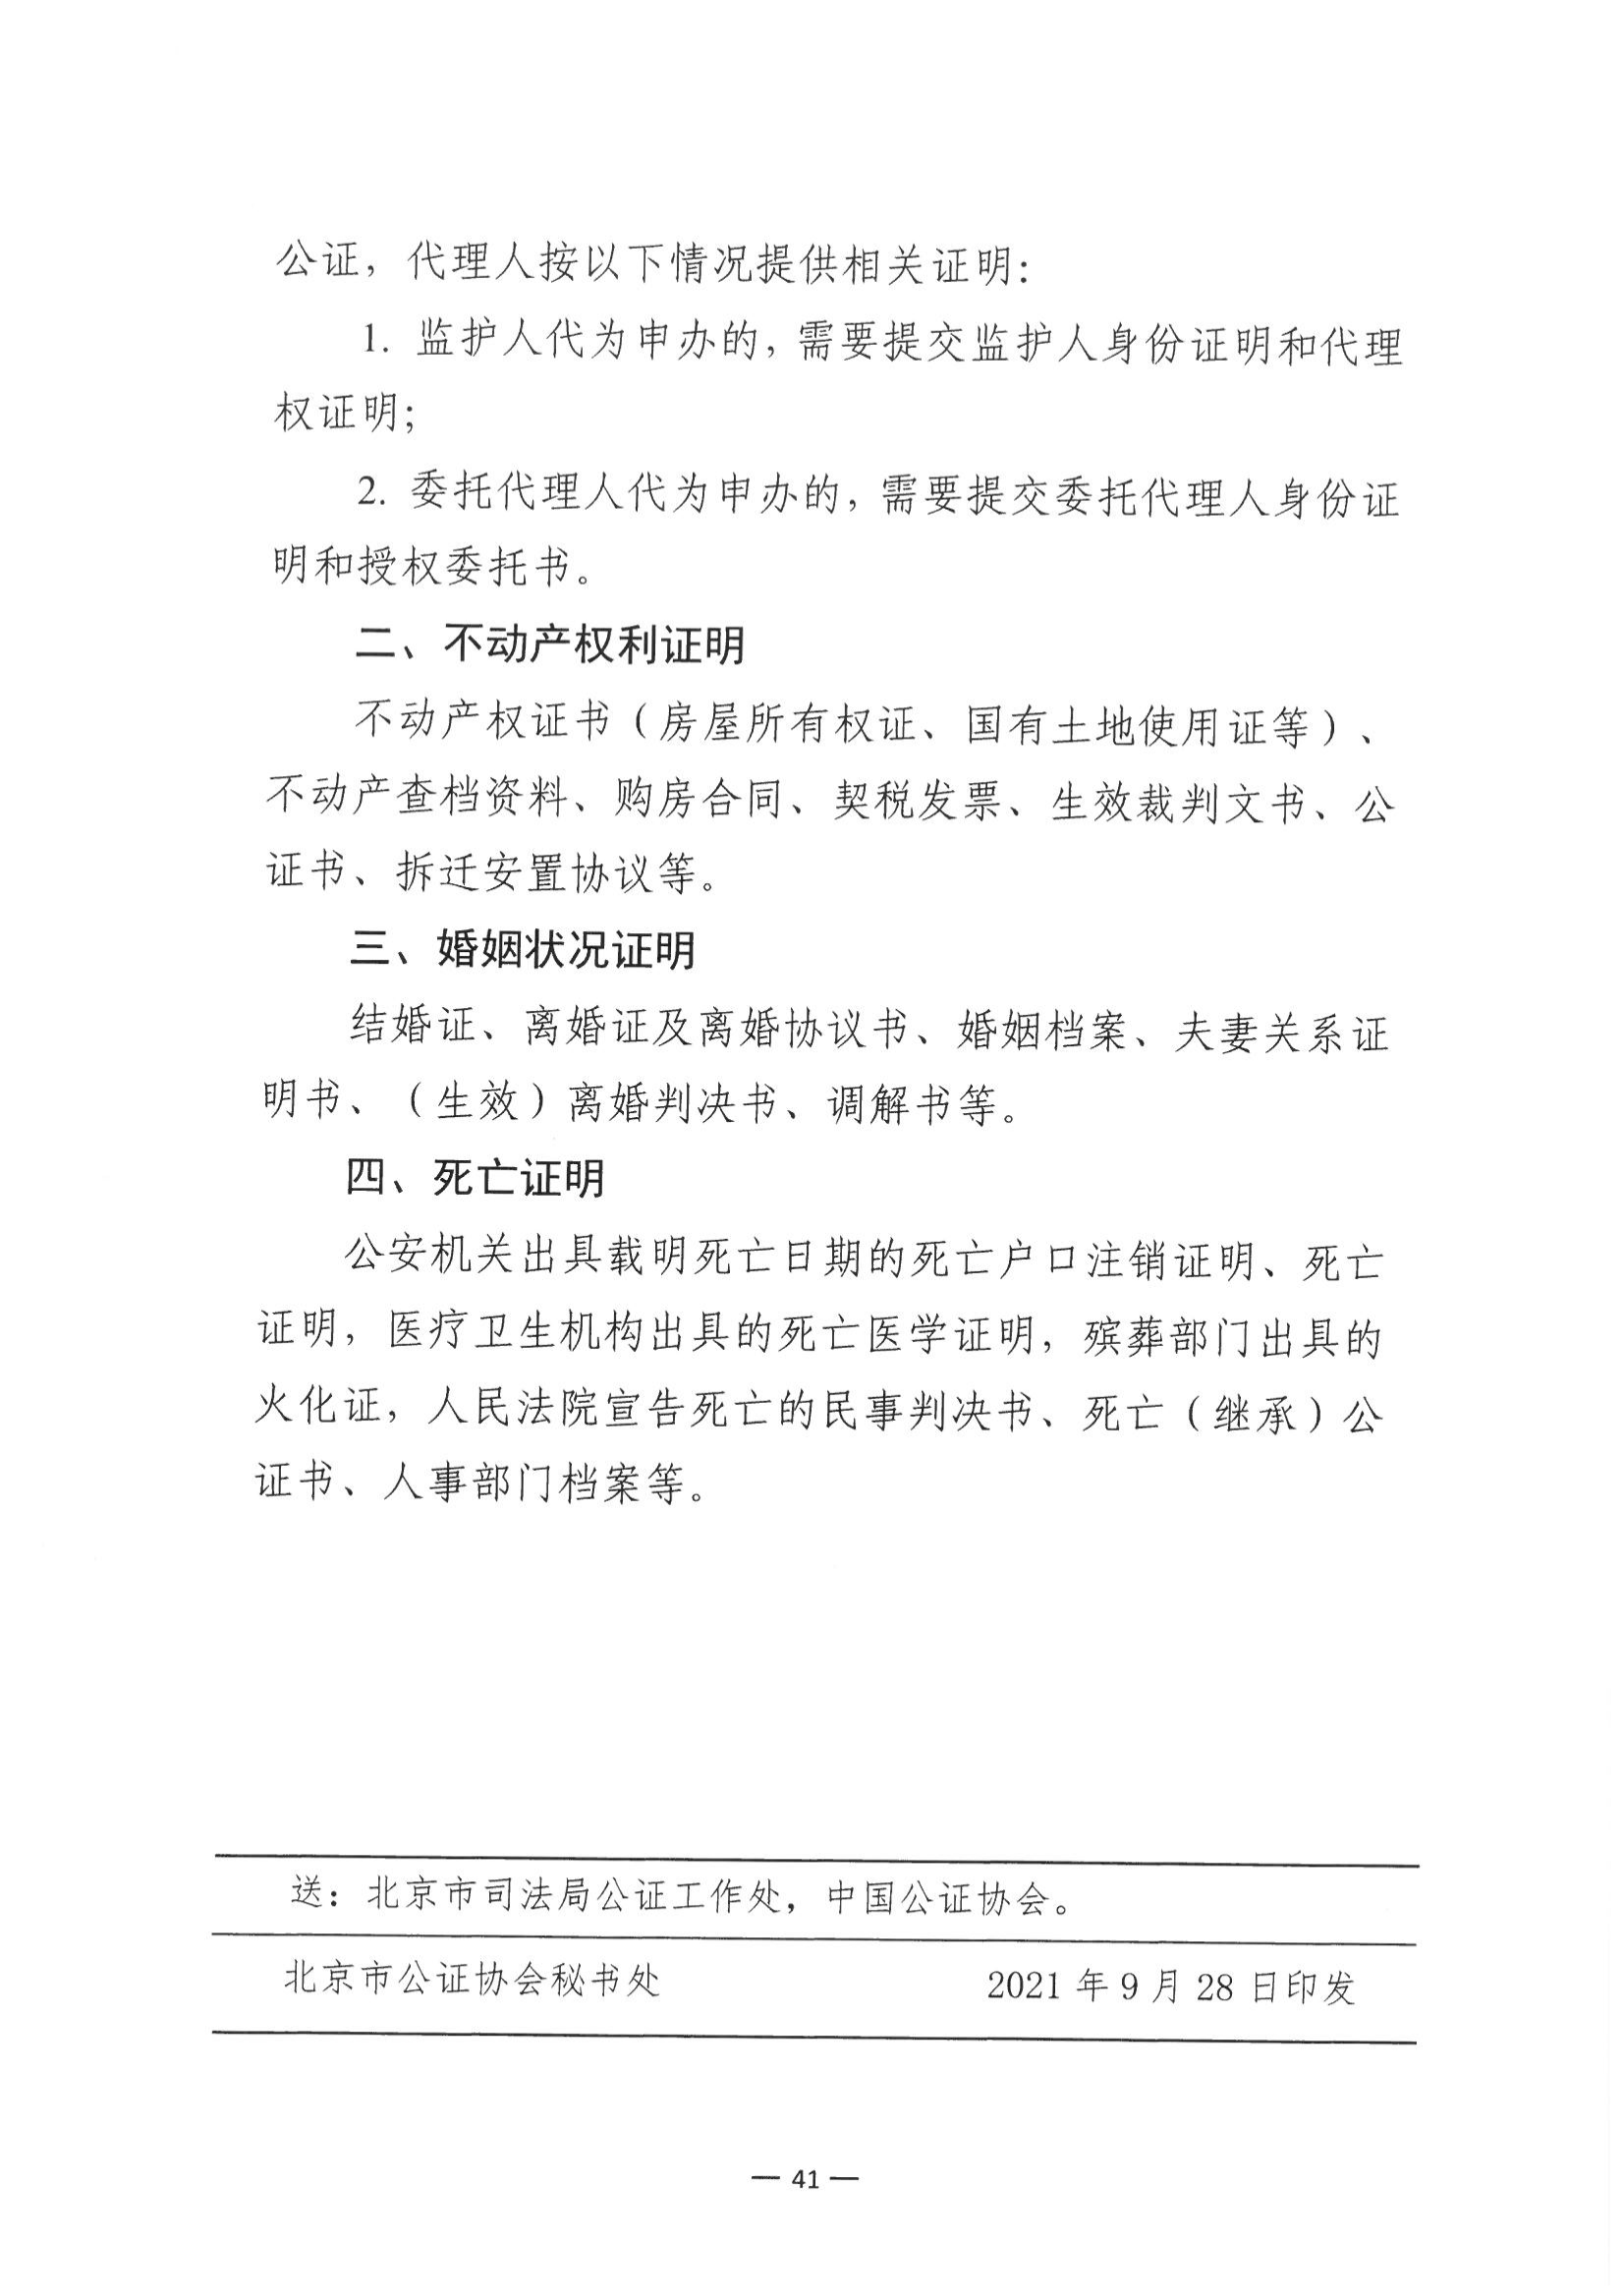 京公协字【2021】30号 北京市公证协会关于印发《公证机构受理公证事项（事务）申请证明材料清单》的通知_130